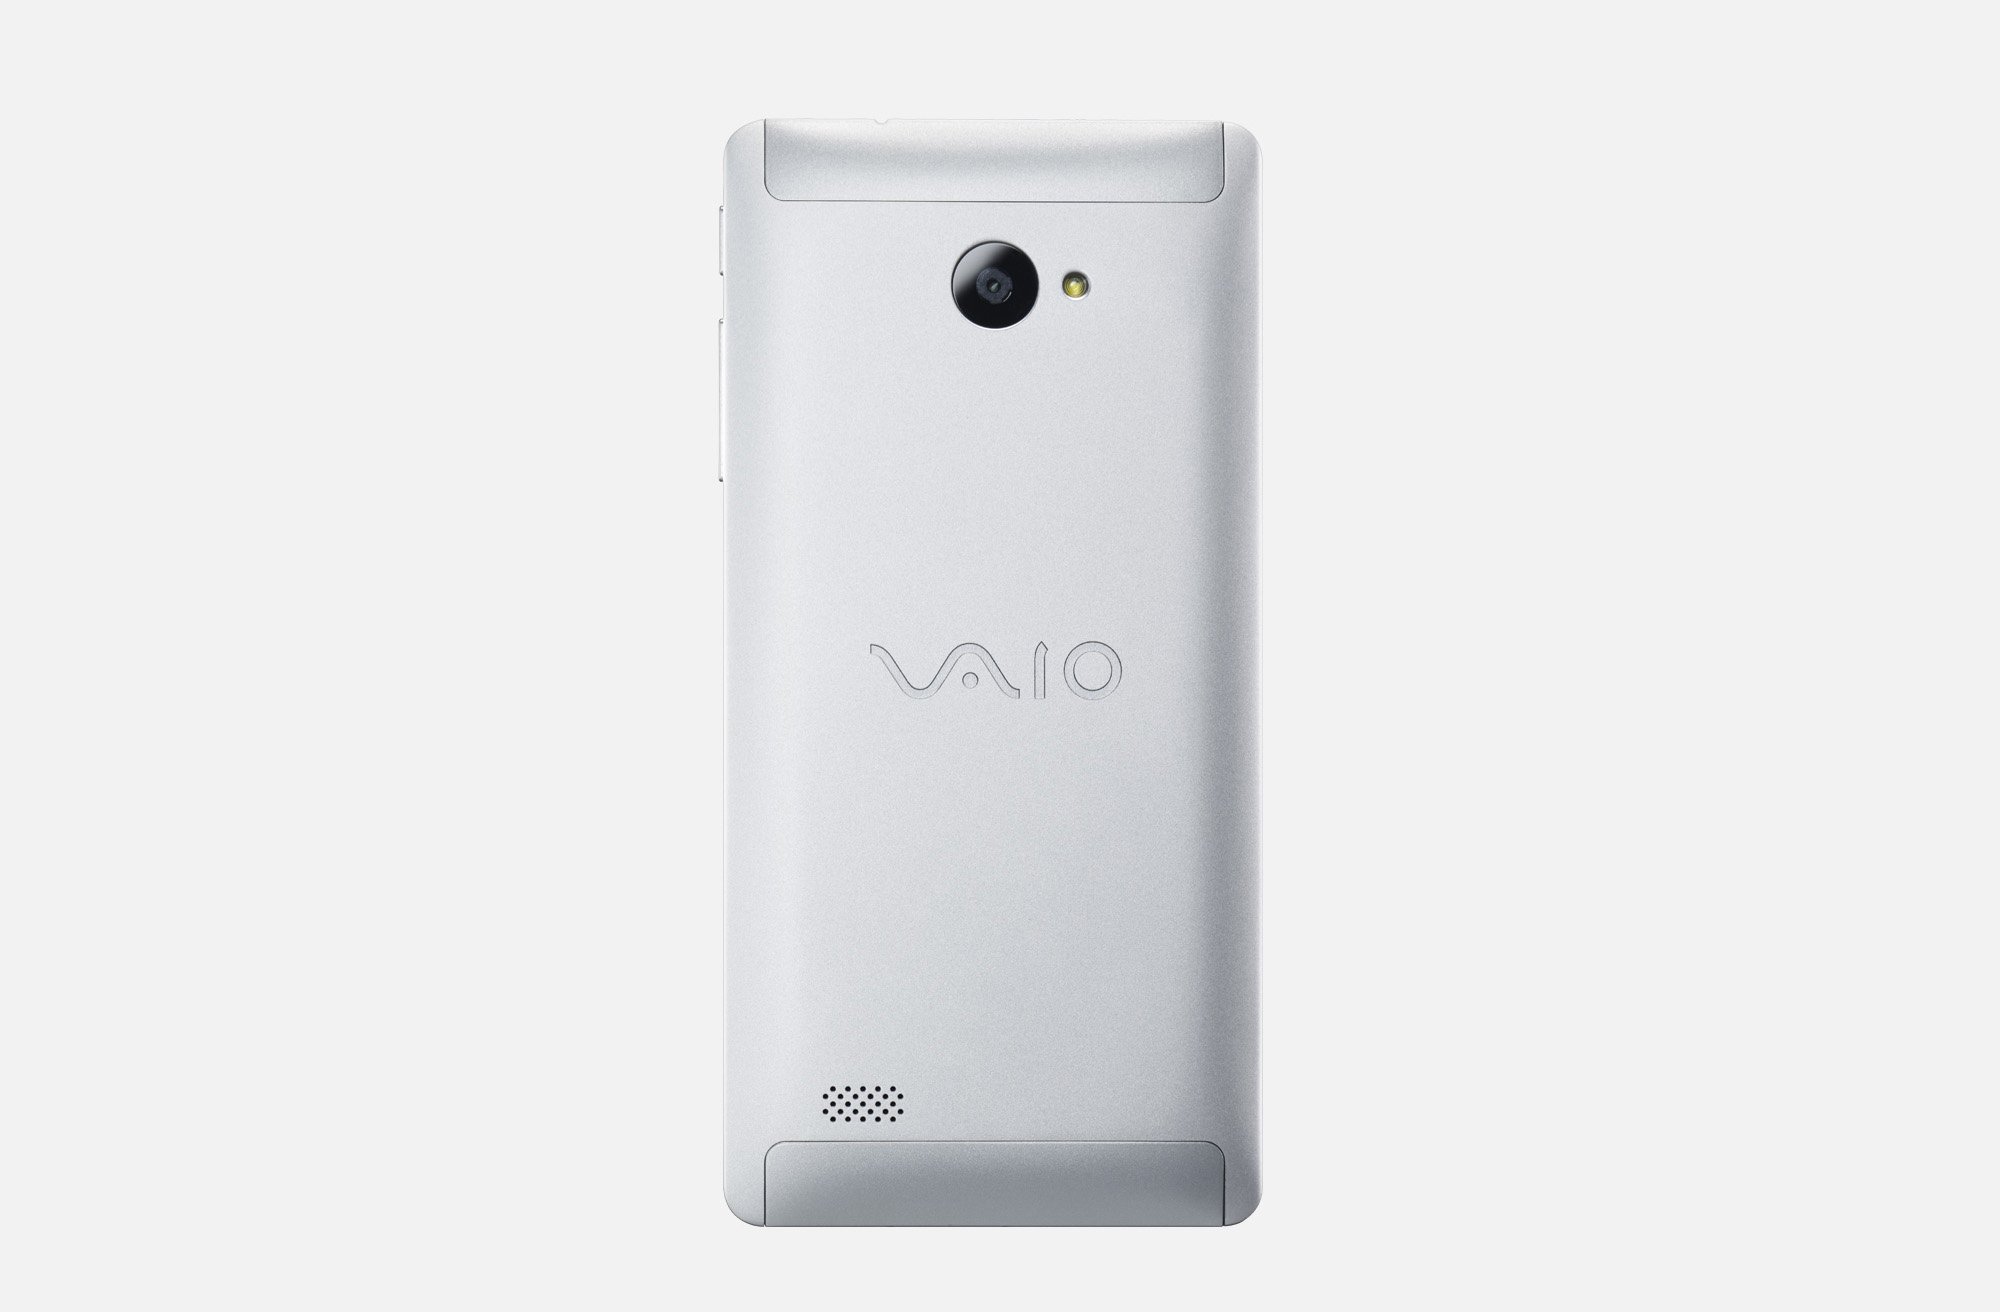 速報:「VAIO Phone Biz」が4月発売。価格は5万円台に